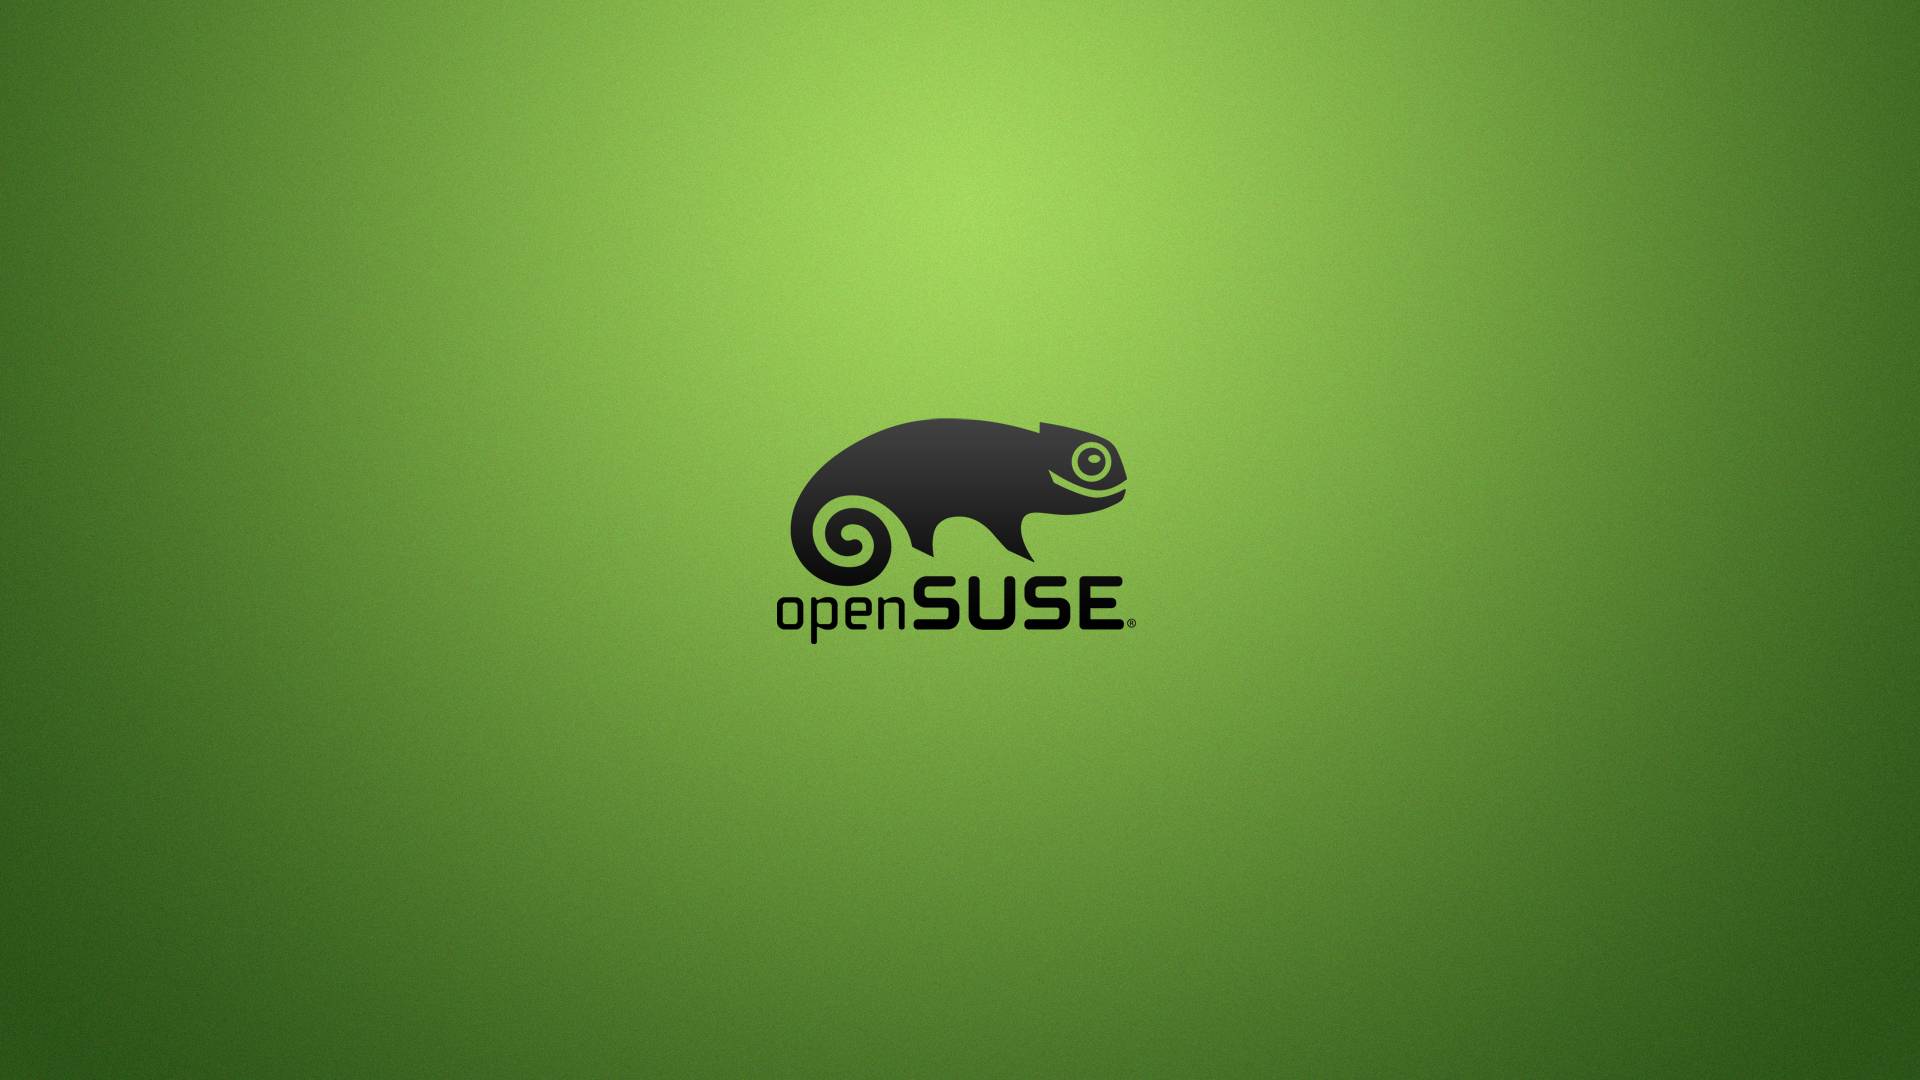 fondos de pantalla para openSUSE wallpaper